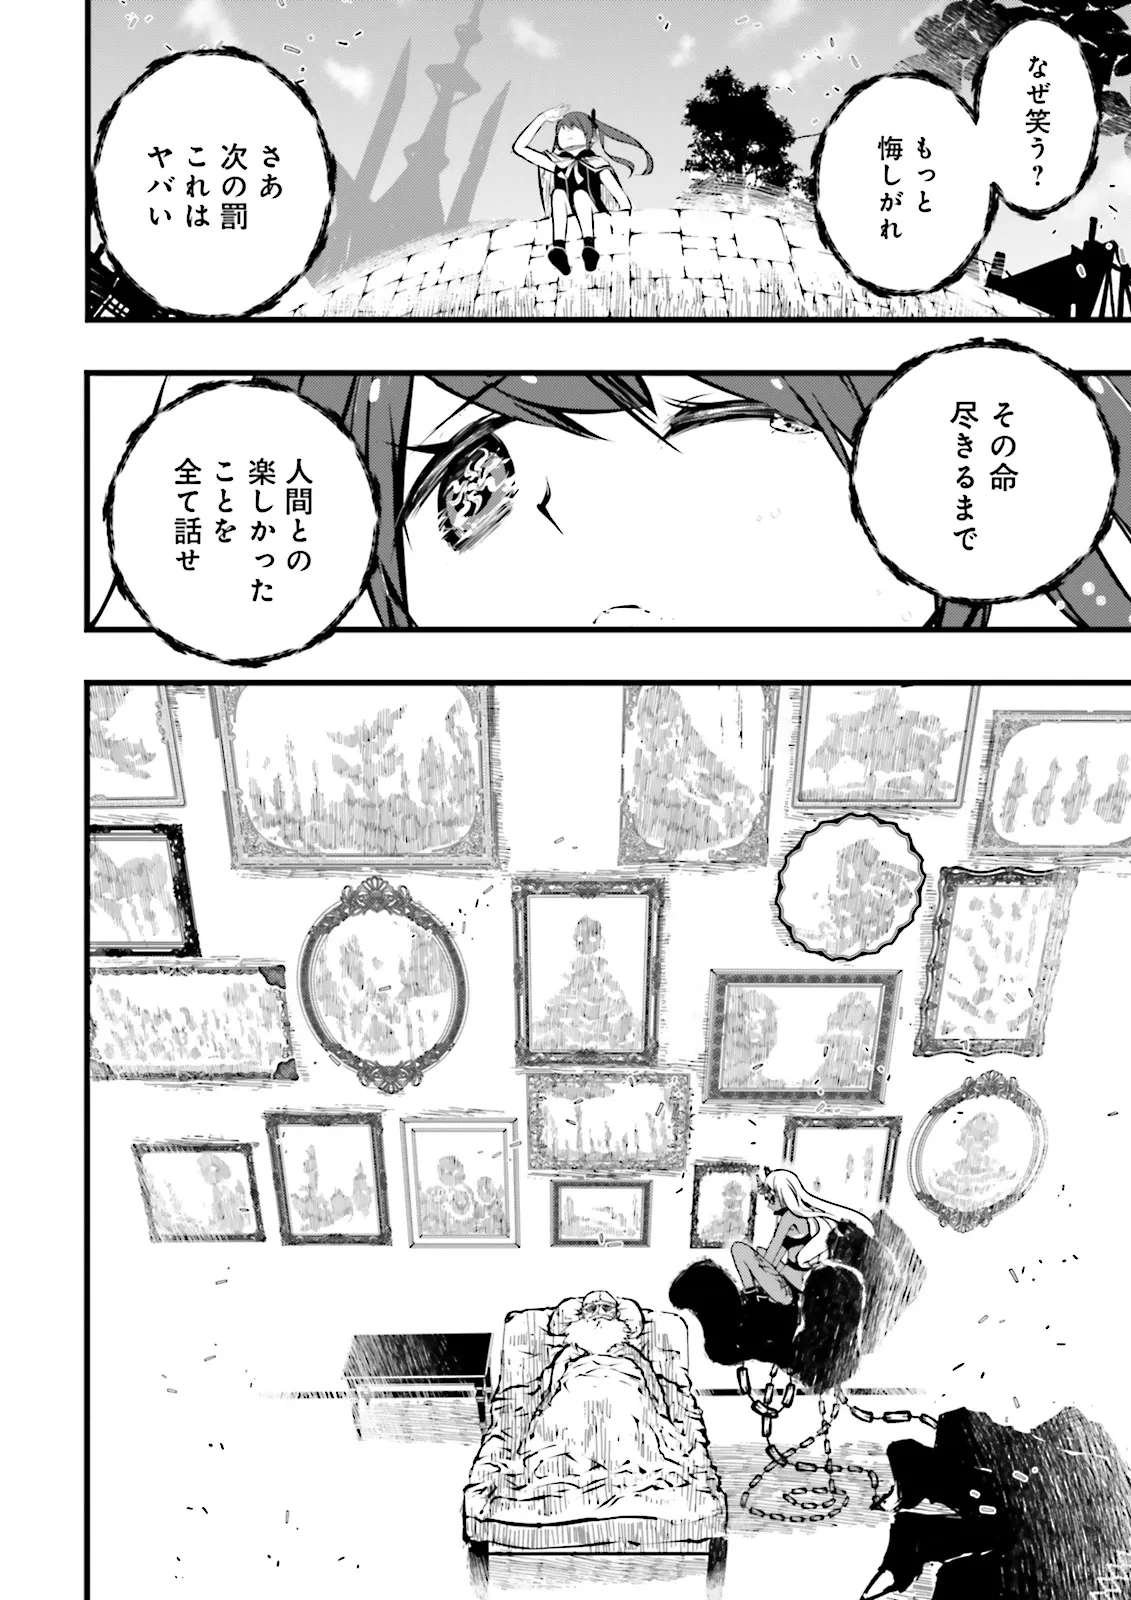 Sukiru Ga Nakereba Level wo Ageru ~ 99 Ga Kansuto No Sekai De Reberu 800 Man Kara Sutato ~ - Chapter 40.3 - Page 10